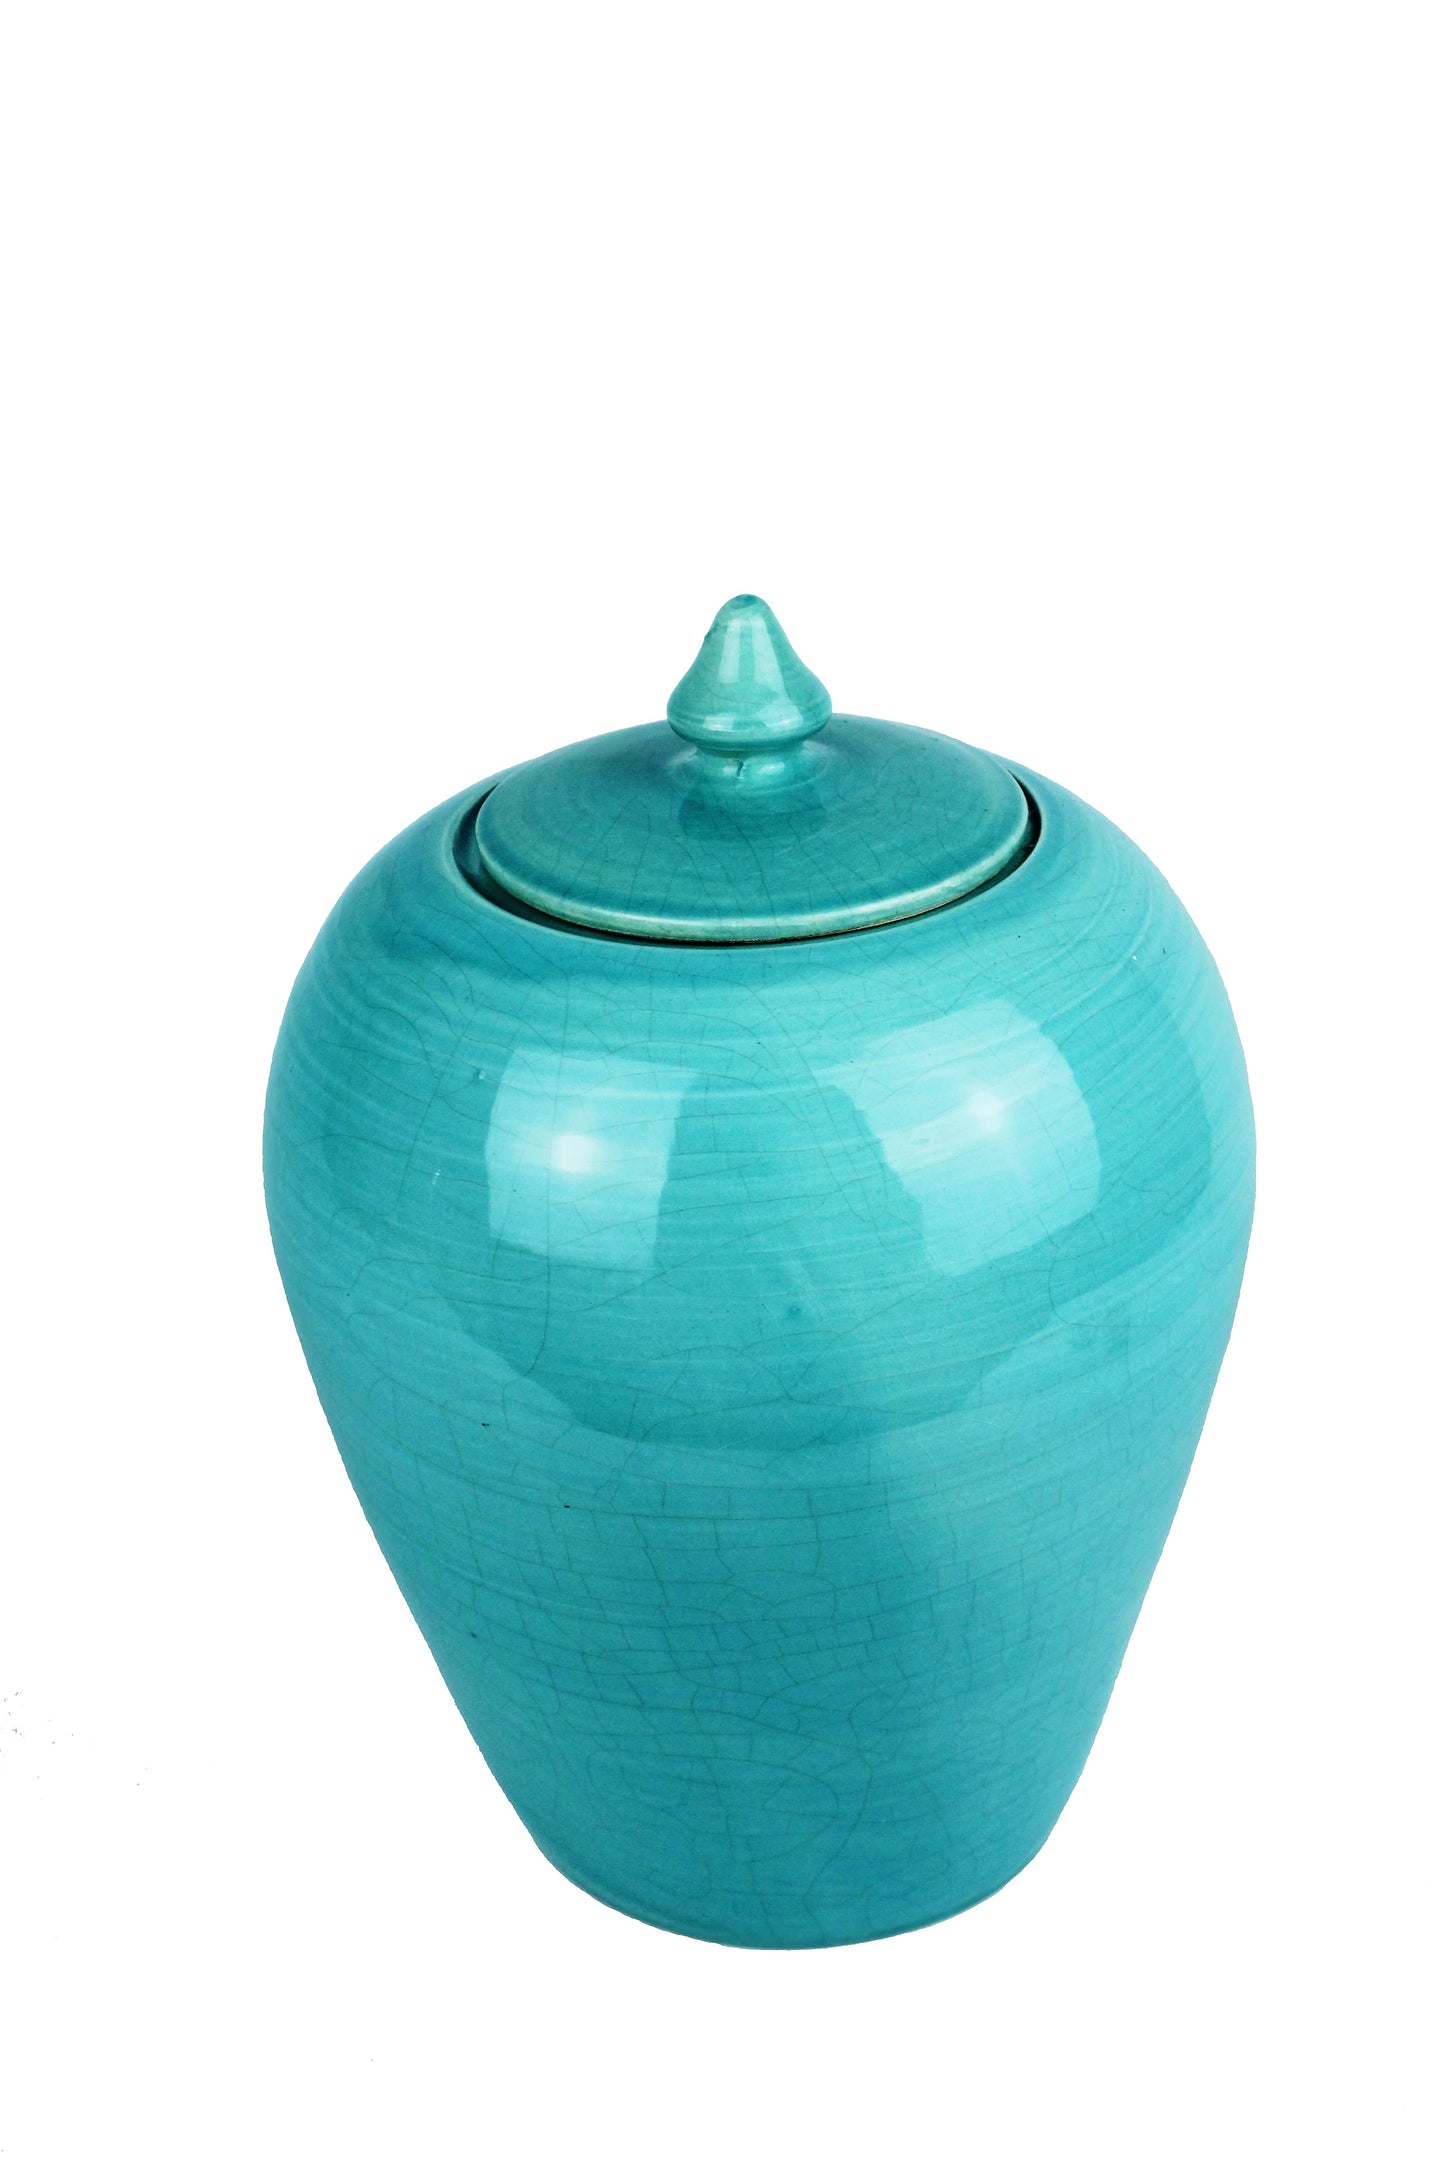 türkise Vase mit Deckel als Tischdekoration